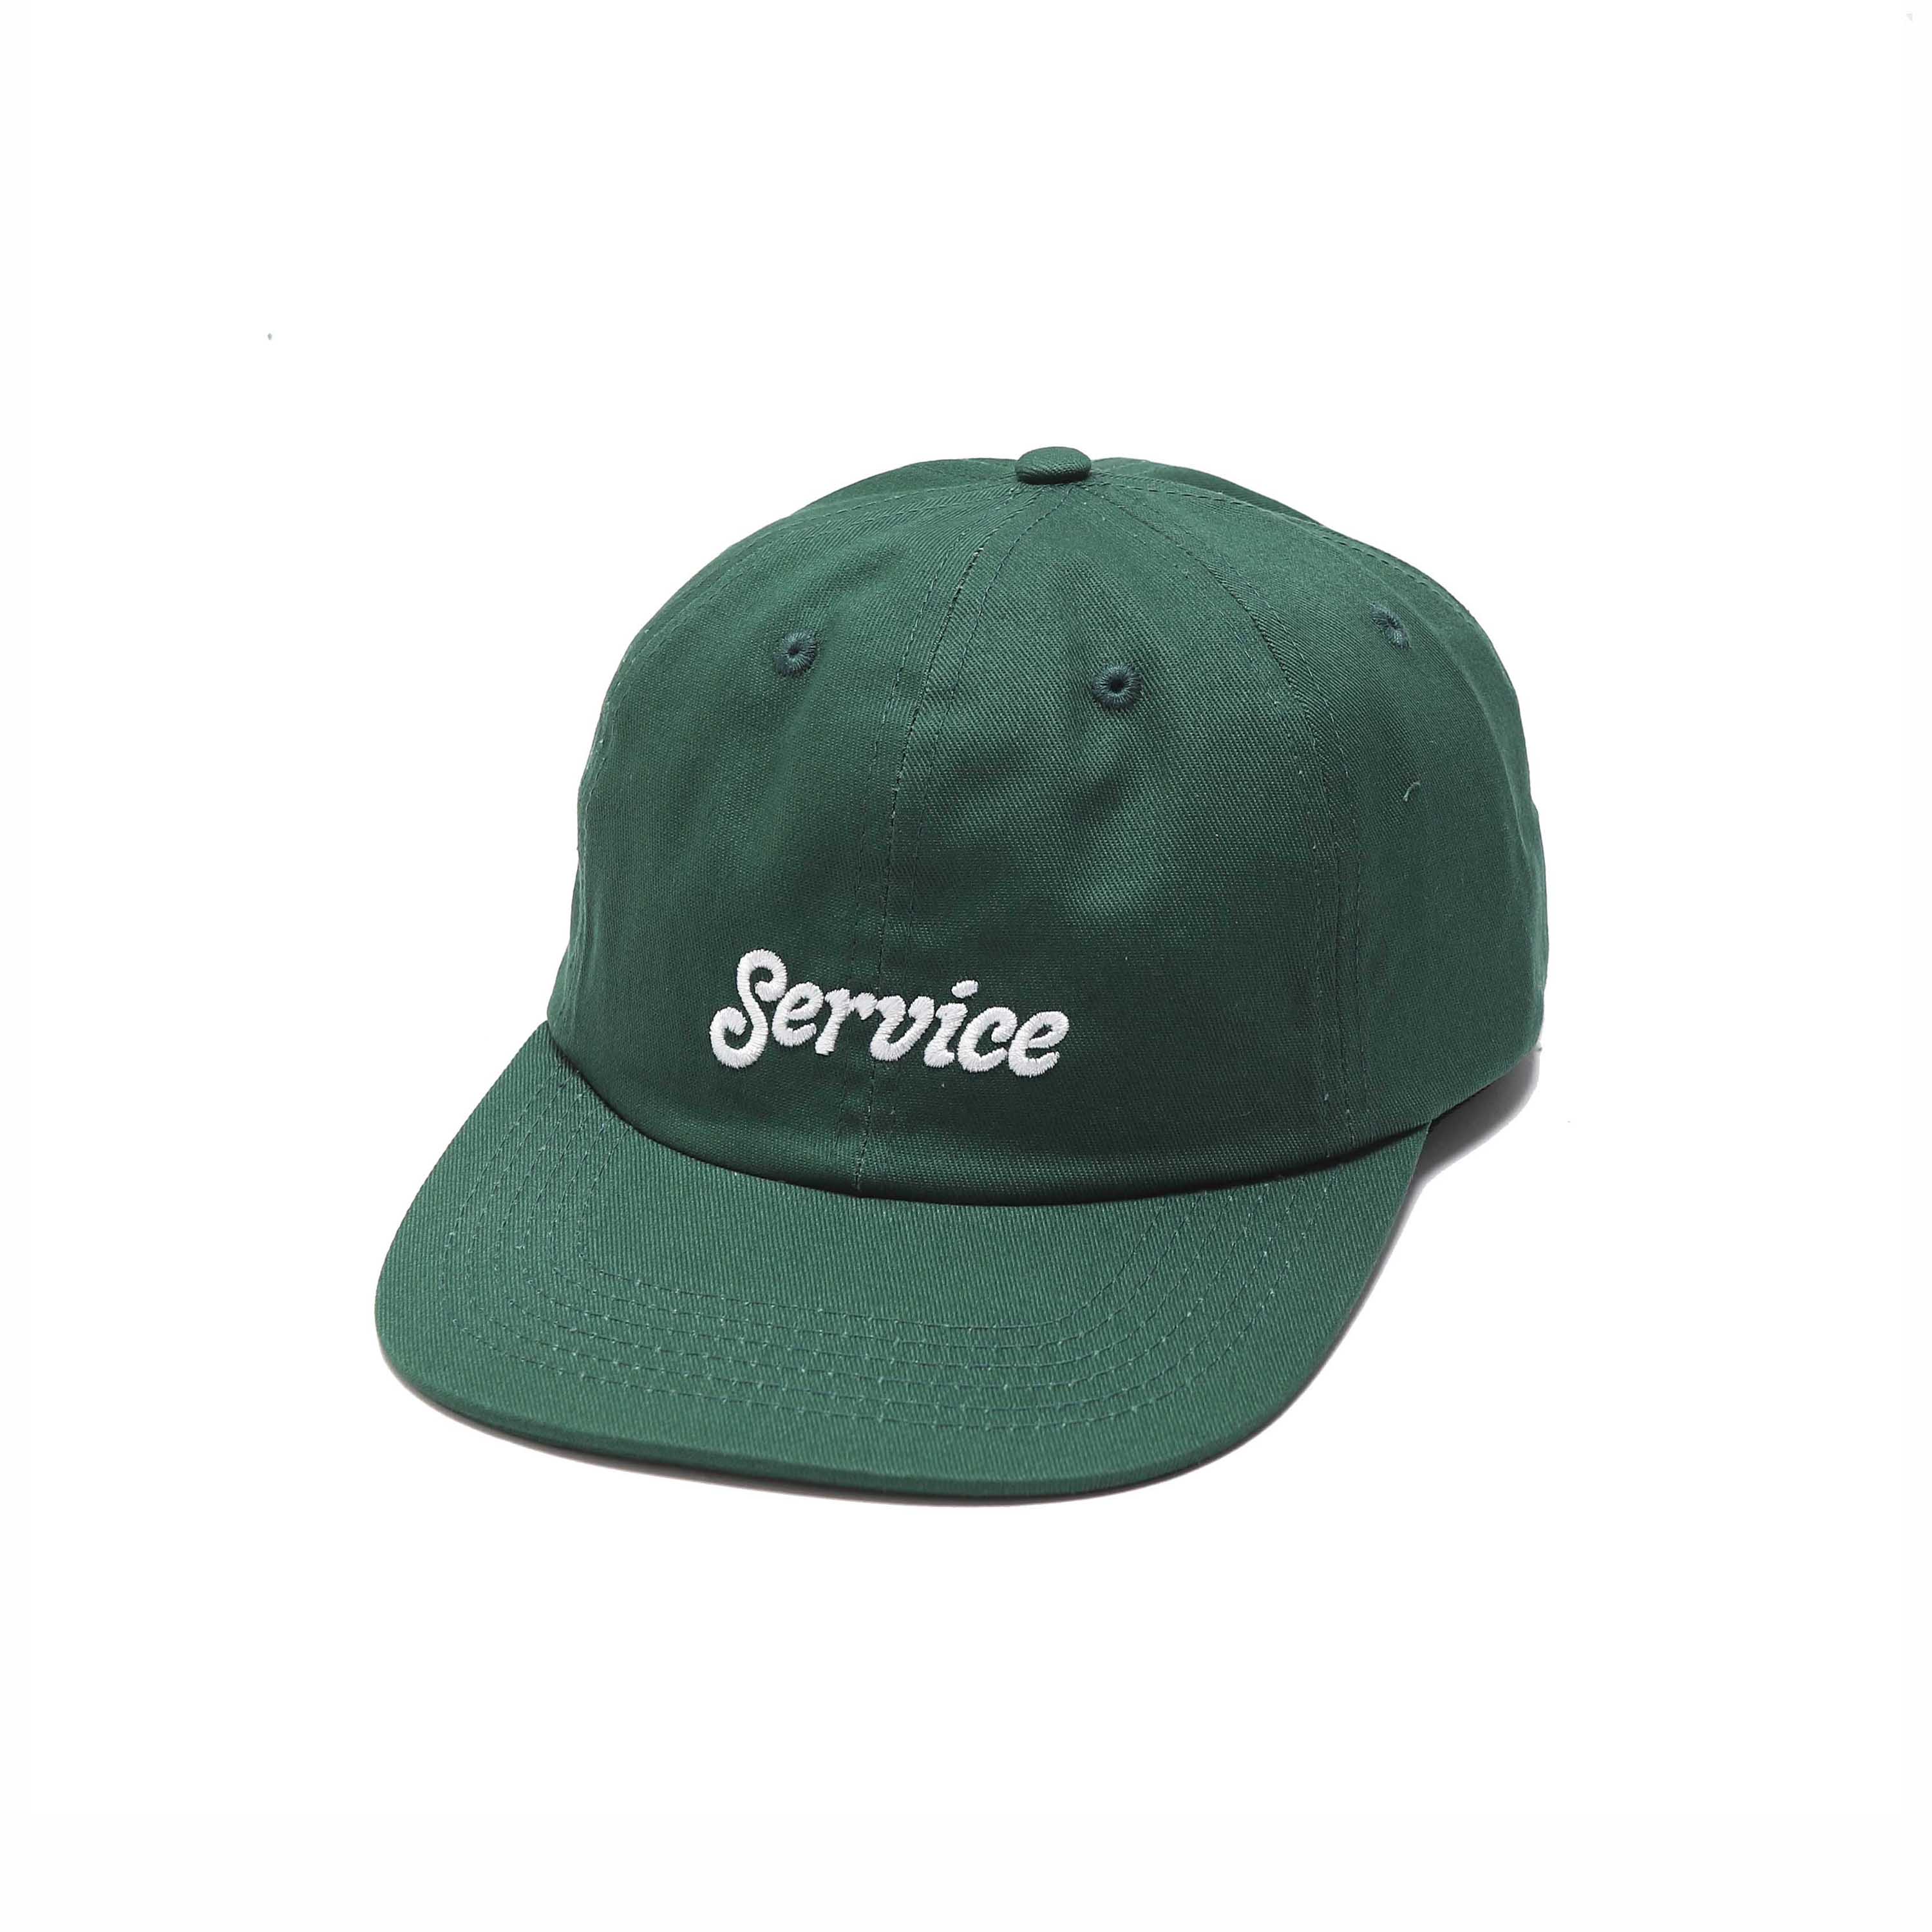 SERVICE CAP - GREEN